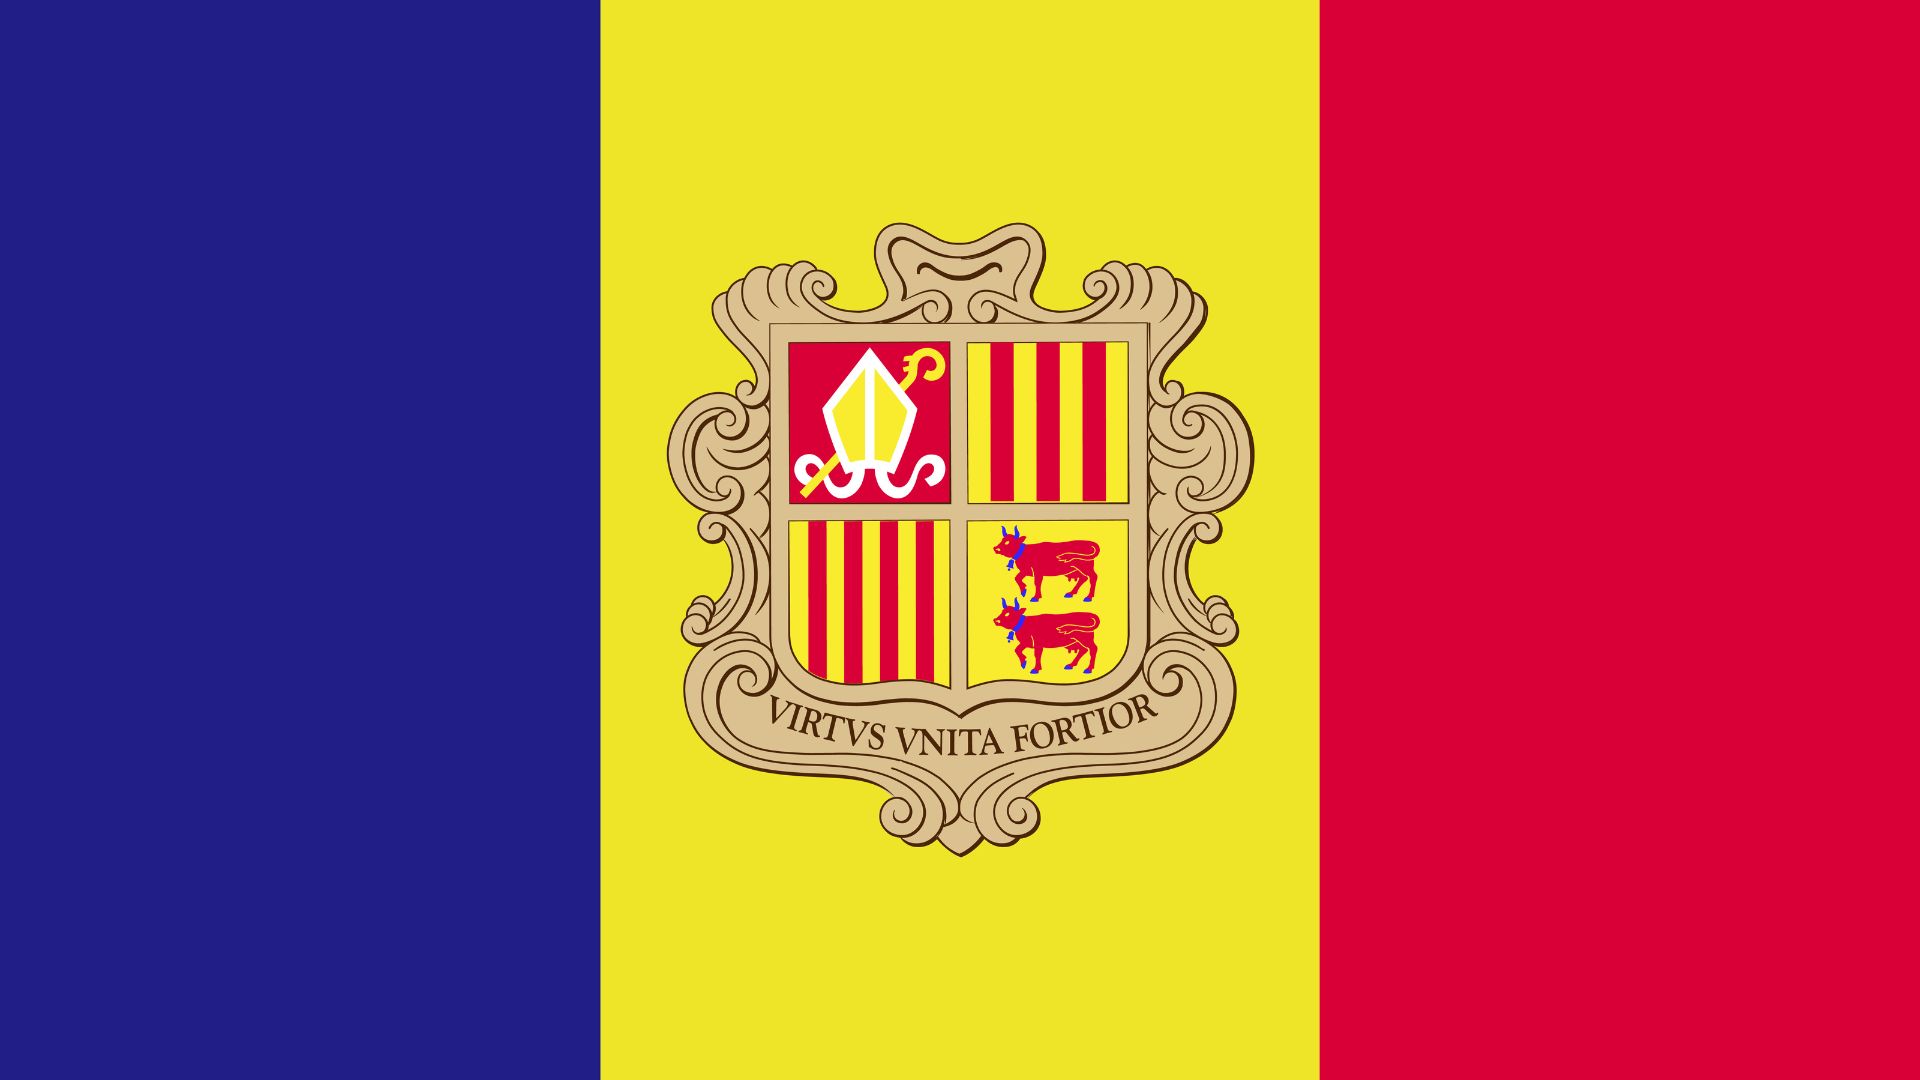 A bandeira de Andorra consiste de um tricolor vertical de azul, amarelo e vermelho, sendo a faixa amarela ligeiramente mais larga que as outras duas, com o brasão de armas da Andorra no centro.